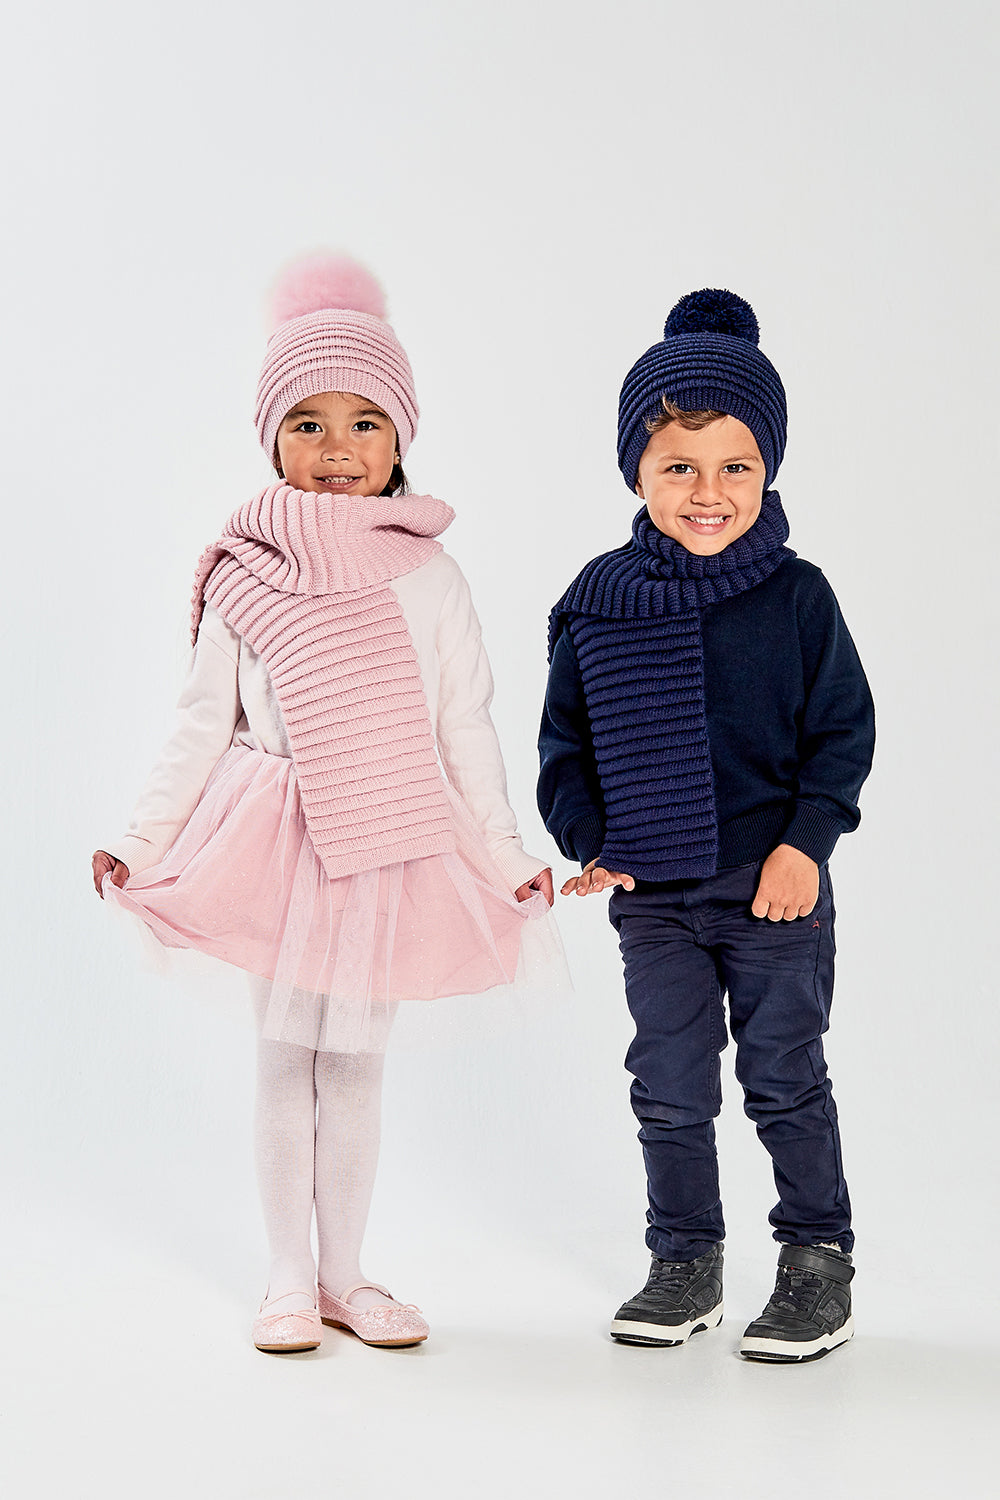 3 in 1 Kids Winter Hat Scarf Gloves Set, Knitted Hat Baby Hat Kids Hat Set,  Warm Winter Beanie Hat Gloves Scarf Set for Kids Boys Girls, 1-5